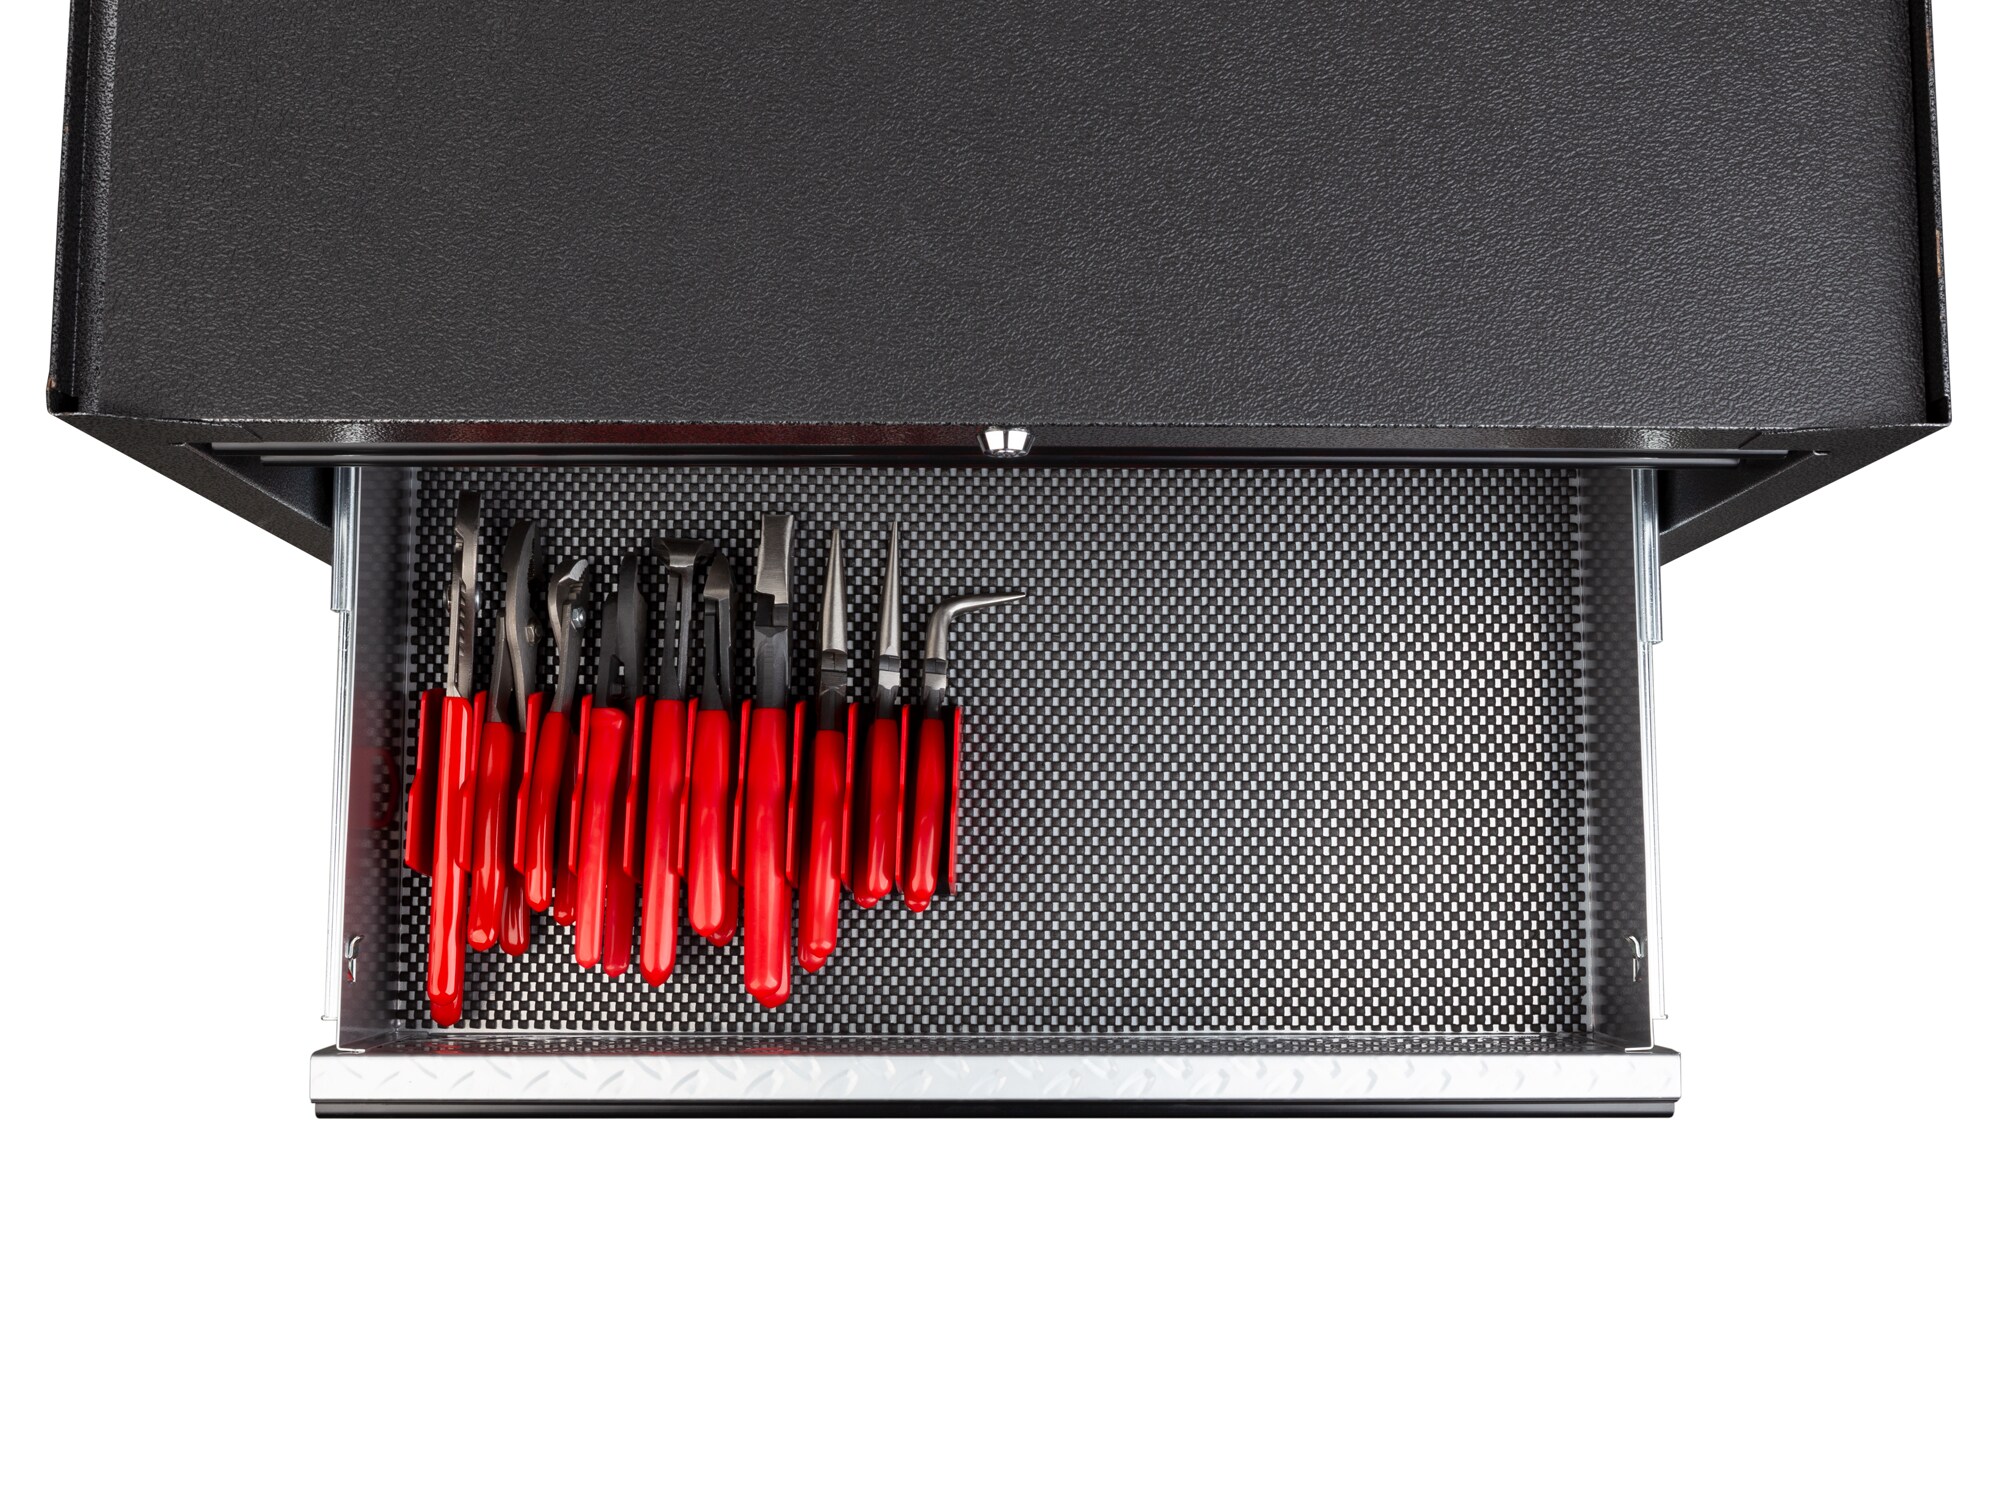 New Tekton Pliers Organizer How to Organize your Toolbox 